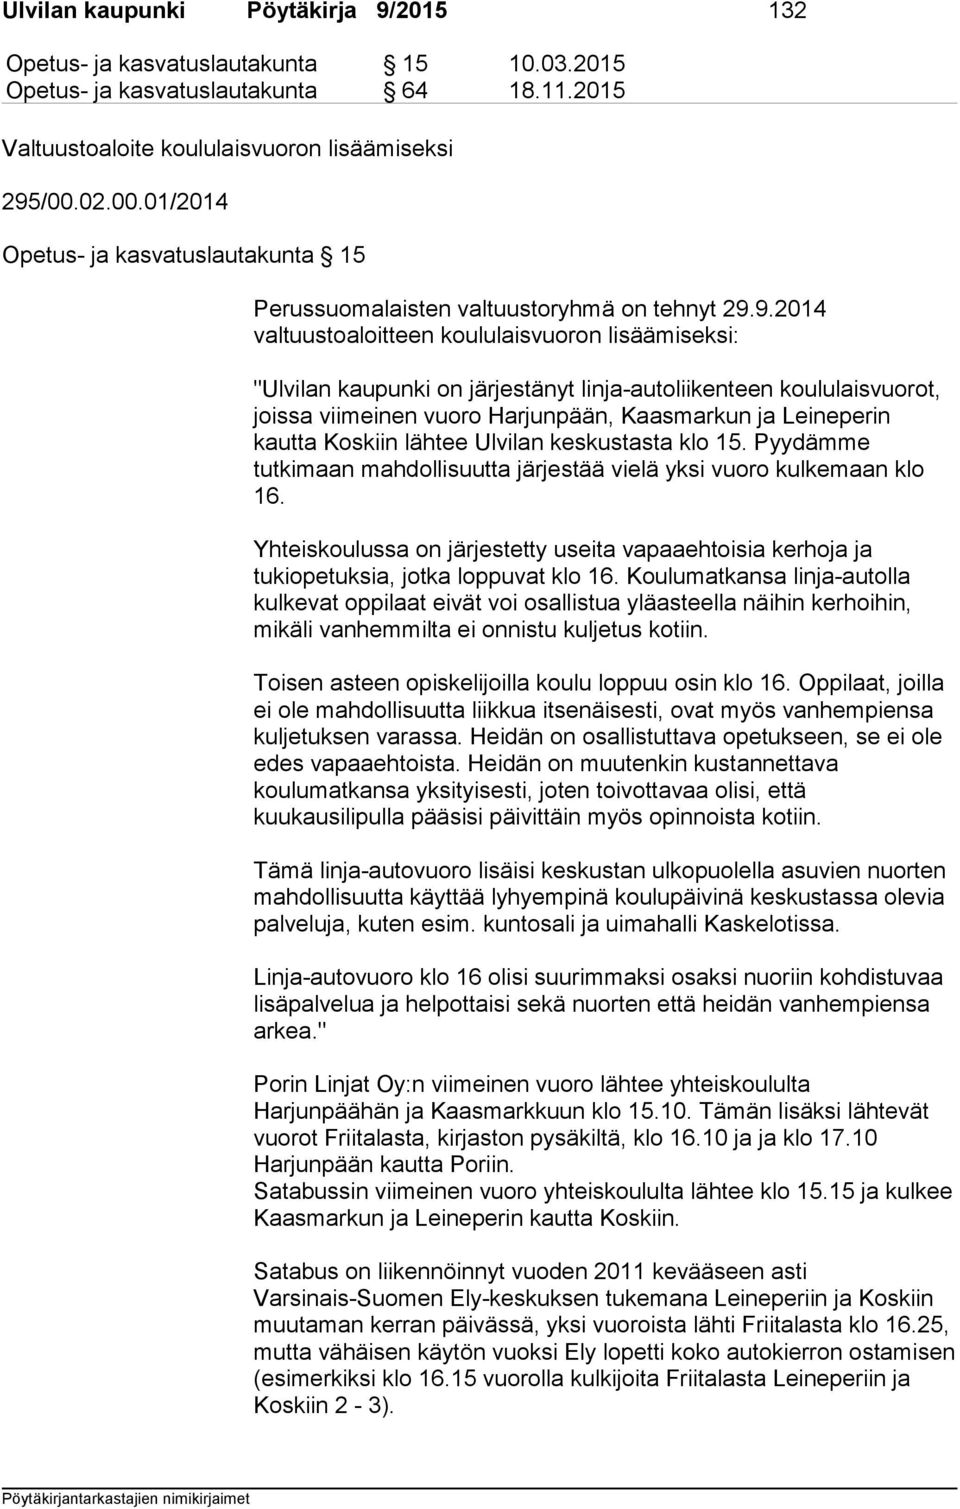 9.2014 valtuustoaloitteen koululaisvuoron lisäämiseksi: "Ulvilan kaupunki on järjestänyt linja-autoliikenteen koululaisvuorot, joissa viimeinen vuoro Harjunpään, Kaasmarkun ja Leineperin kautta